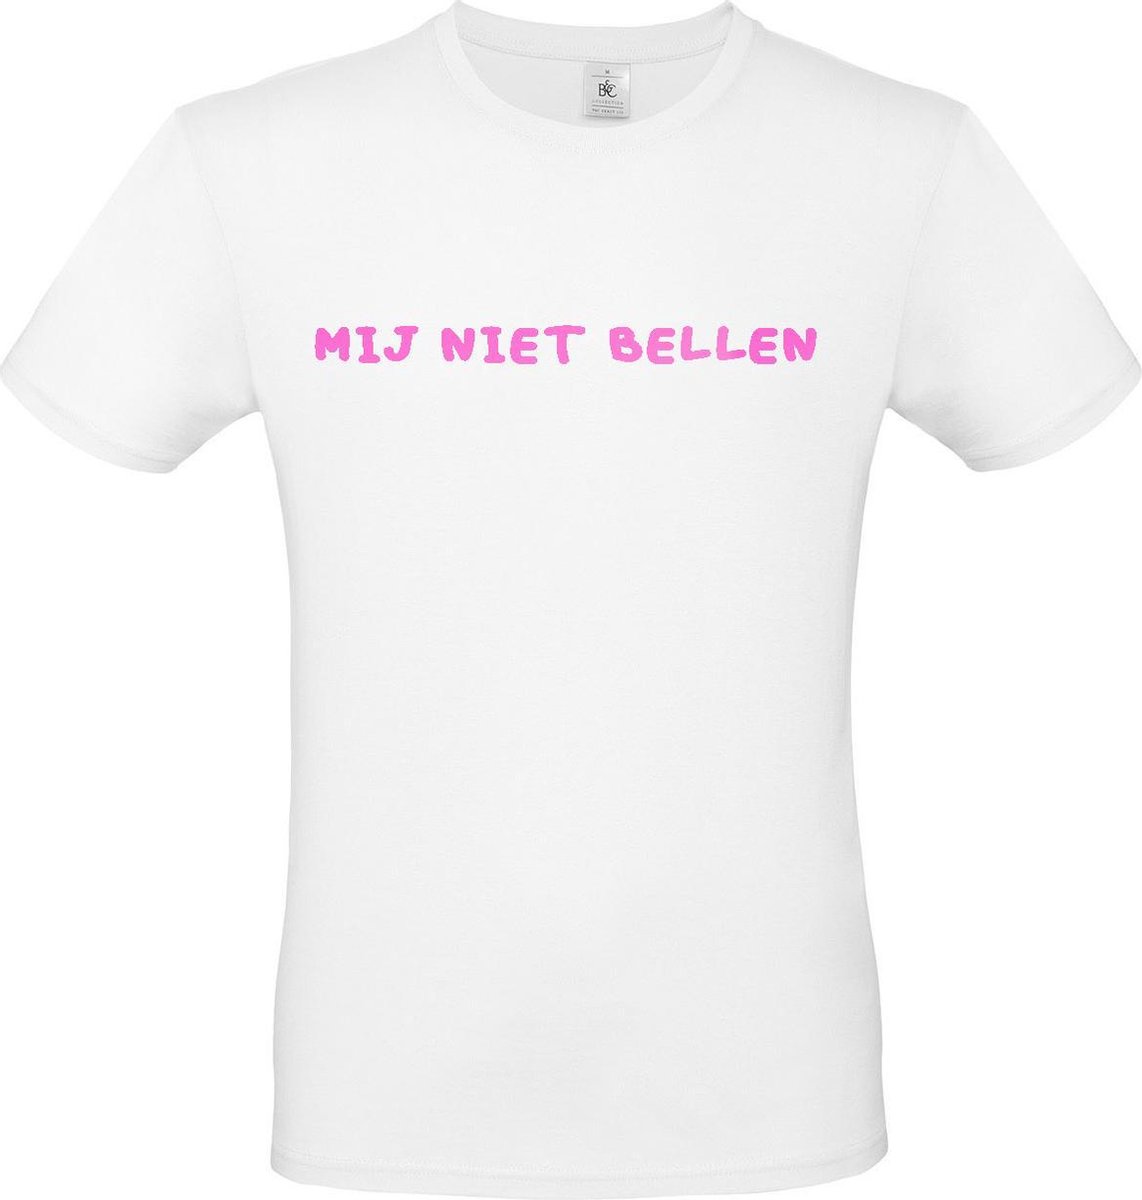 T-shirt met opdruk “Mij niet bellen”, Wit T-shirt met fluor-rose opdruk